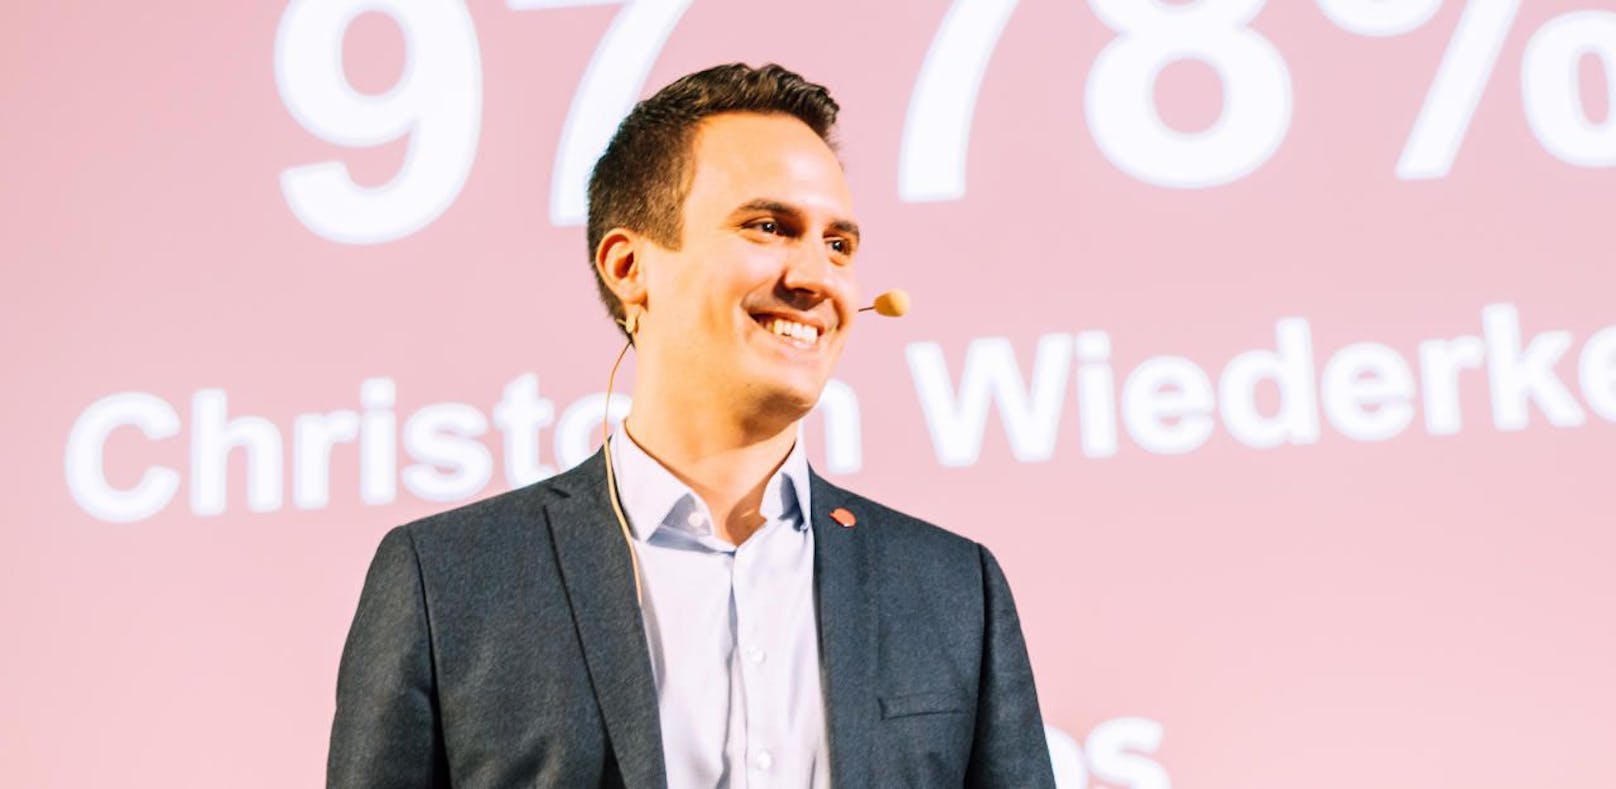 Christoph Wiederkehr ist der neue Landessprecher der Wiener NEOS